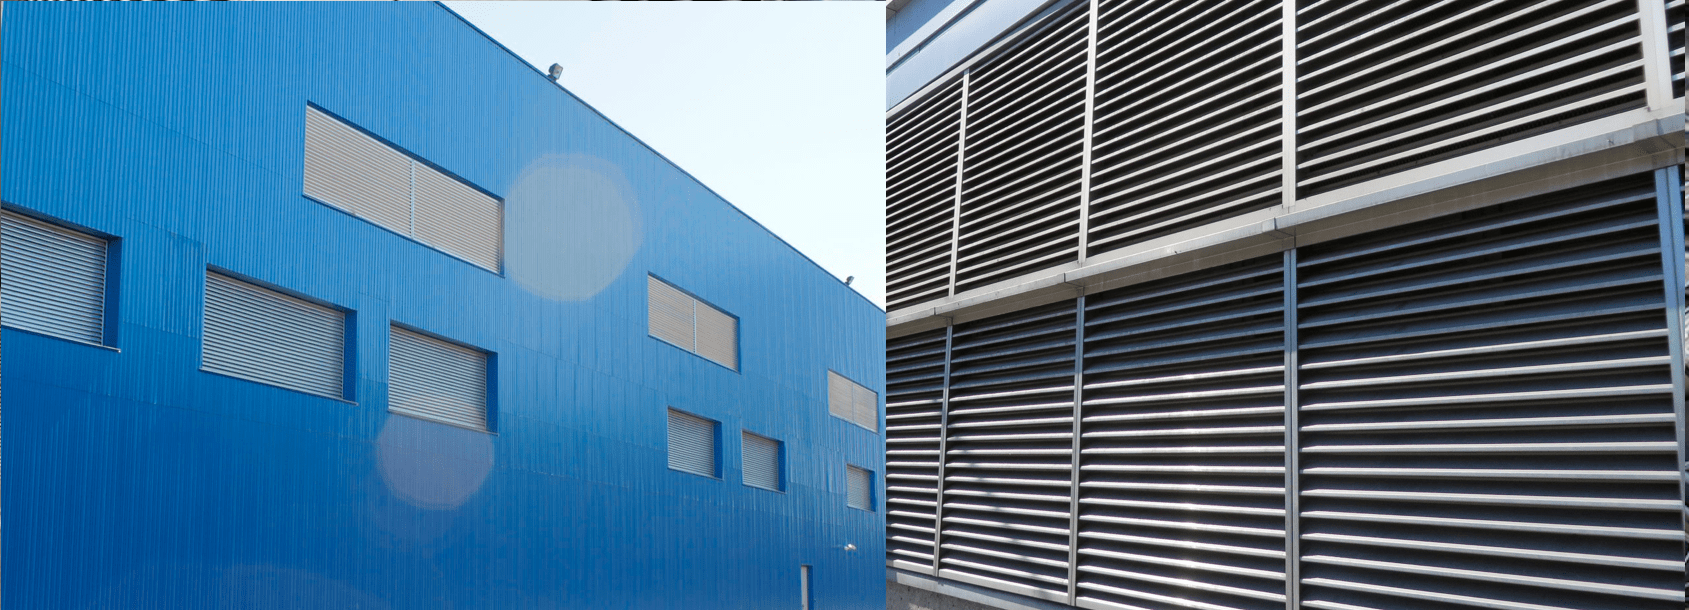 Фасадные наружные решетки вентиляции